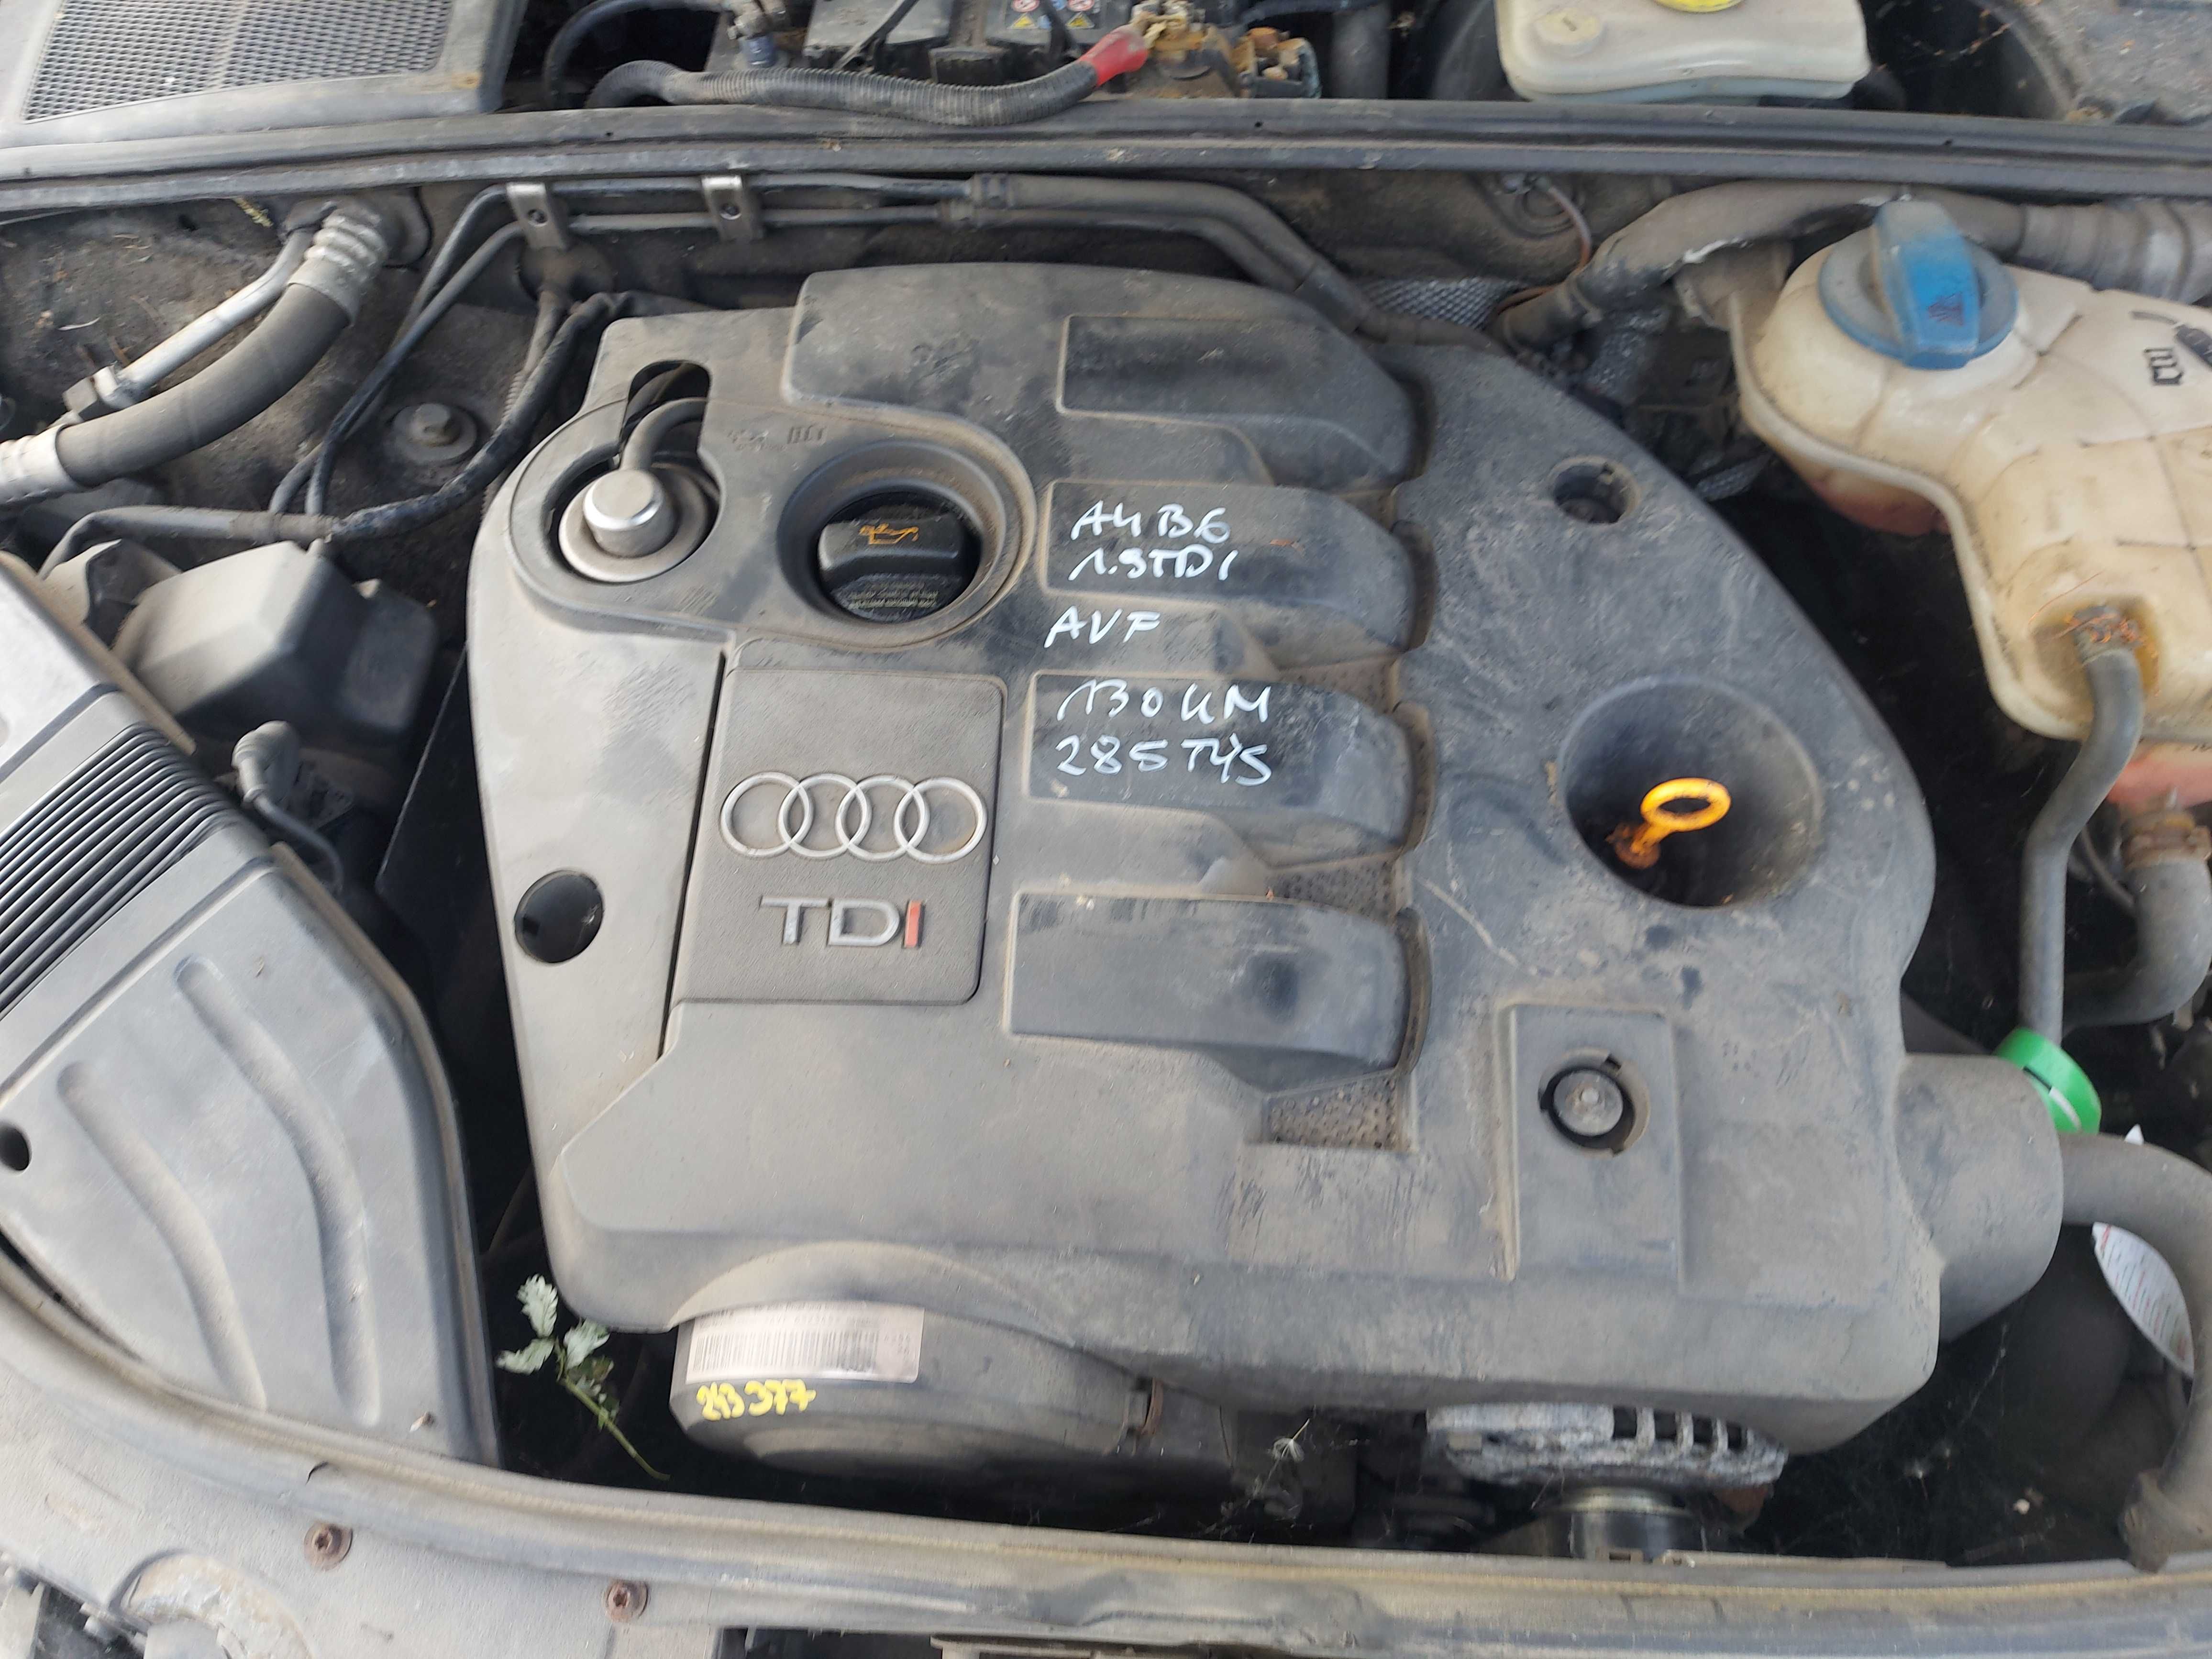 Silnik Audi A4 B6 1,9 TDI 130 KM AVF 285 TYS. FV części/dostawa